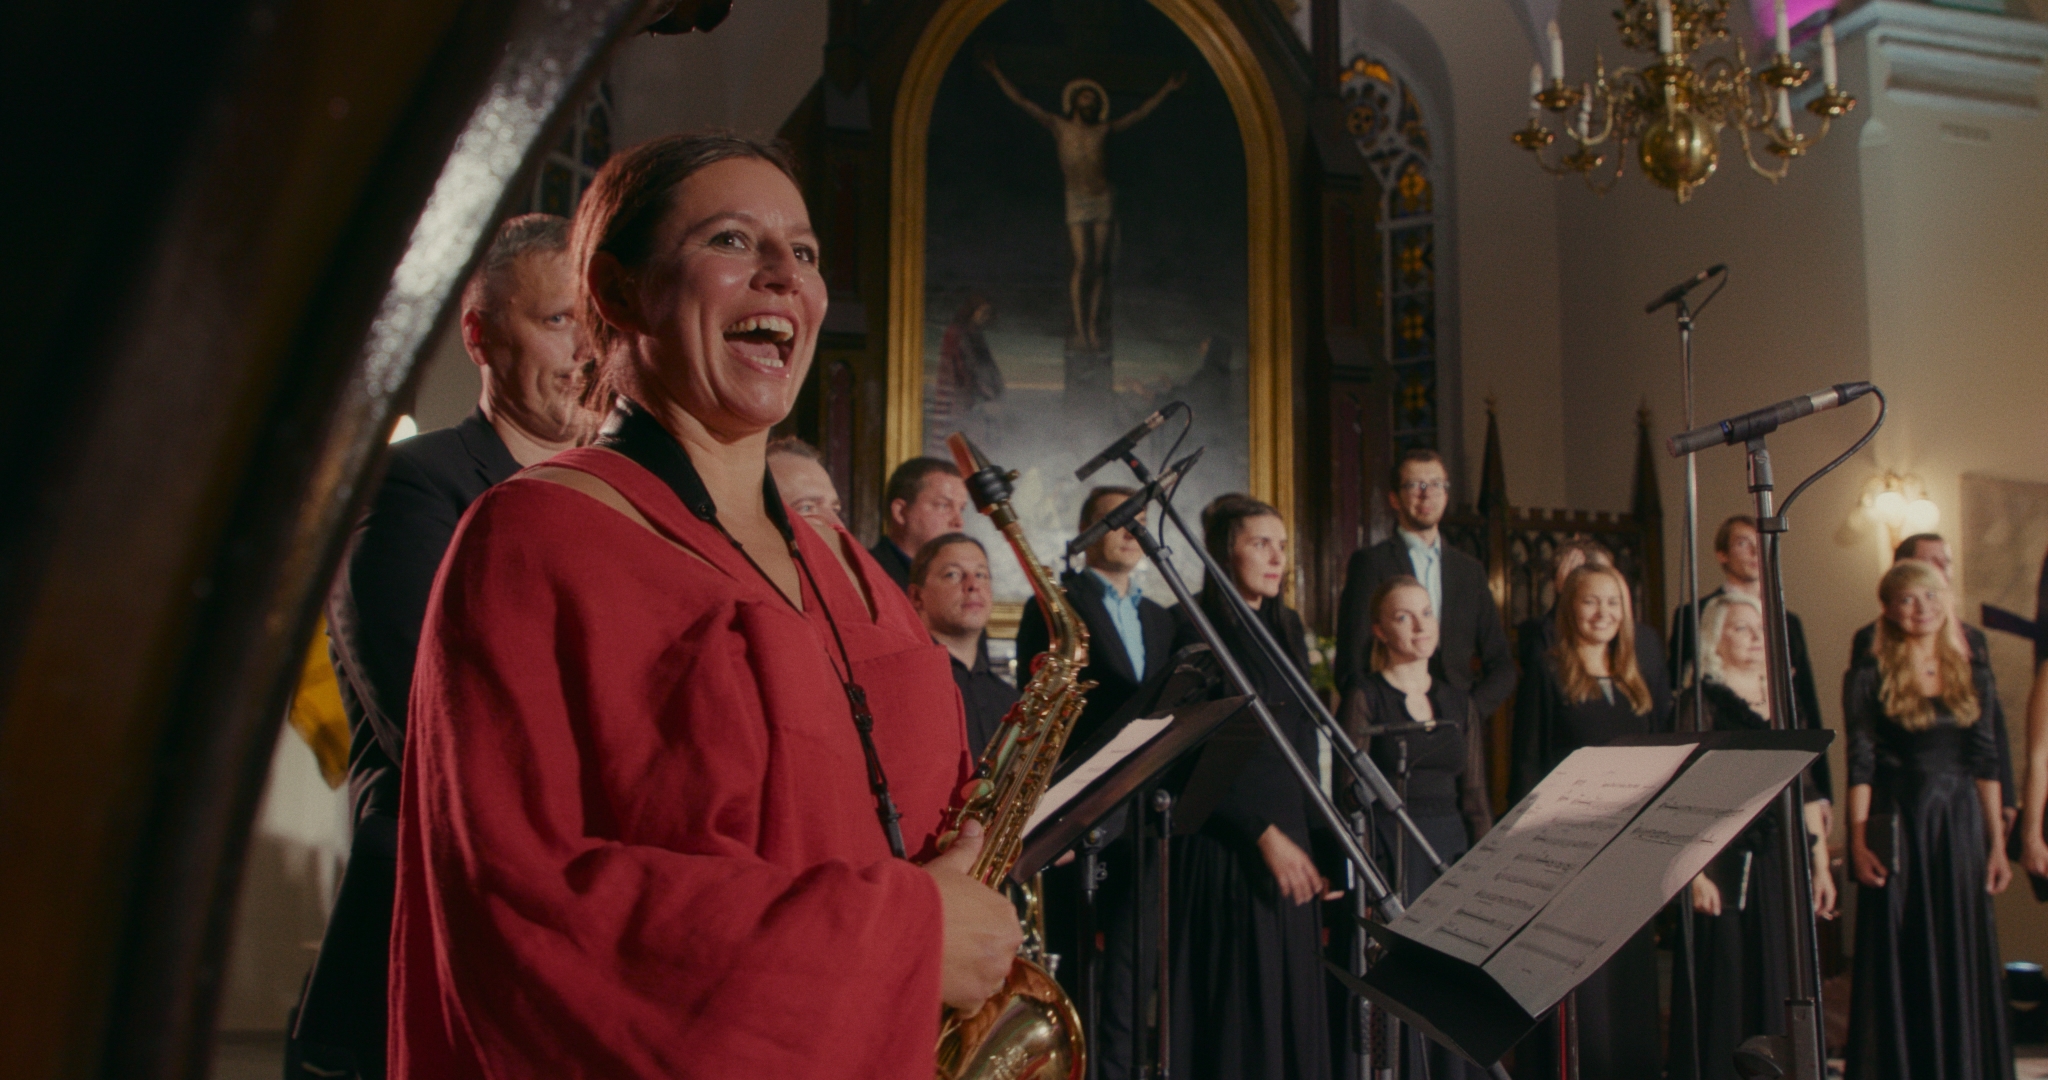 Still aus dem estländischen Film "Machina Faust". Man sieht einen Chor und eine Musikerin mit einem Saxophon in einer Kapelle stehen.